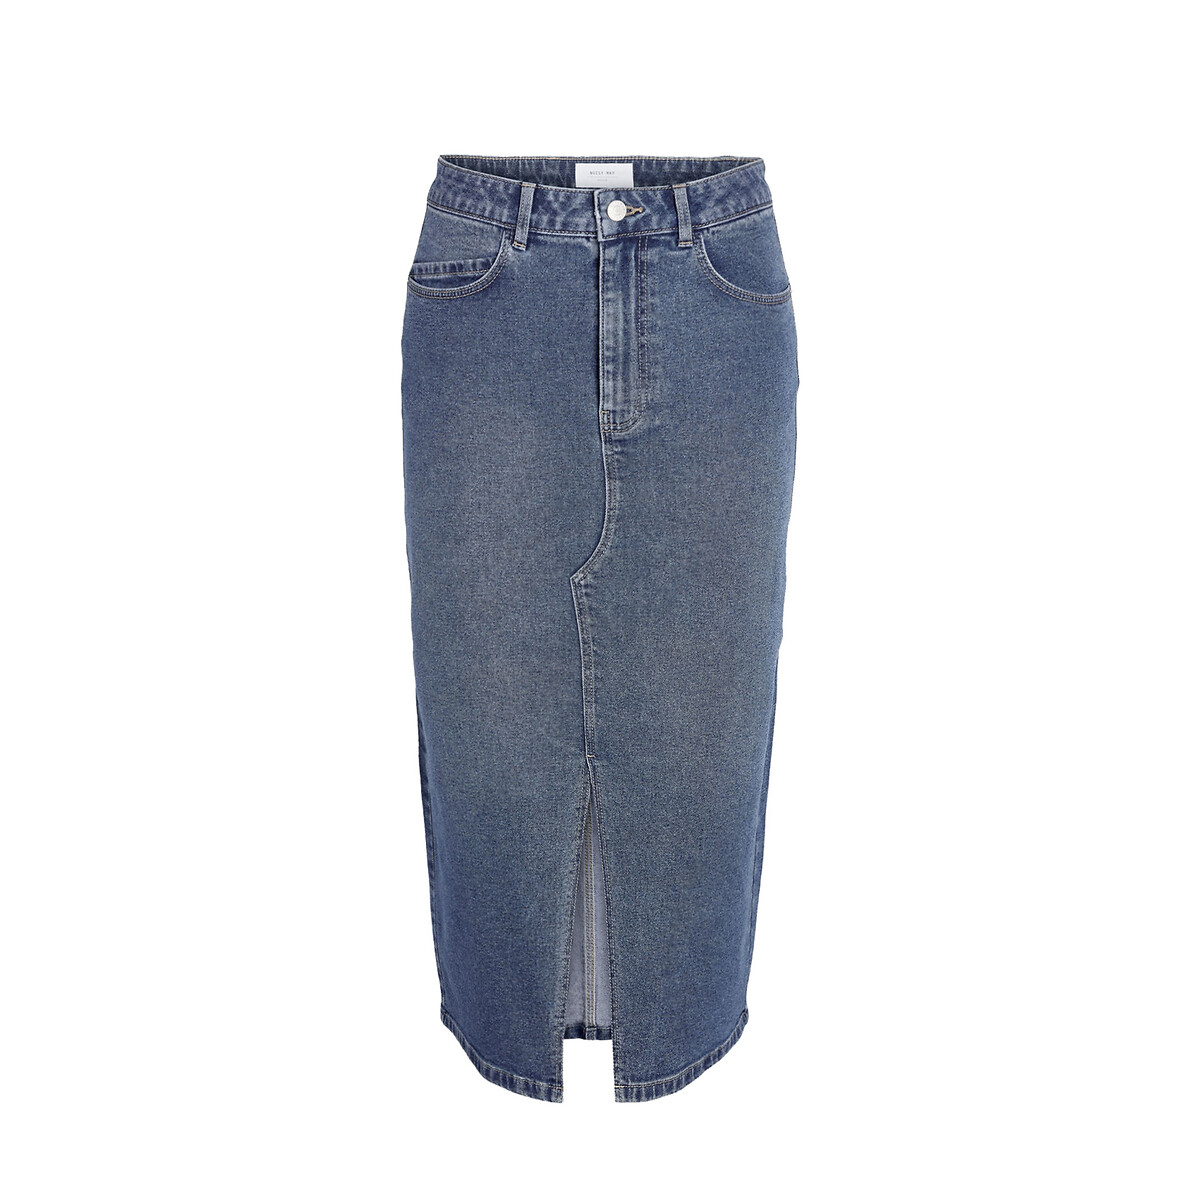 Юбка-миди из джинсовой ткани L синий юбка длинная из джинсовой ткани xs синий